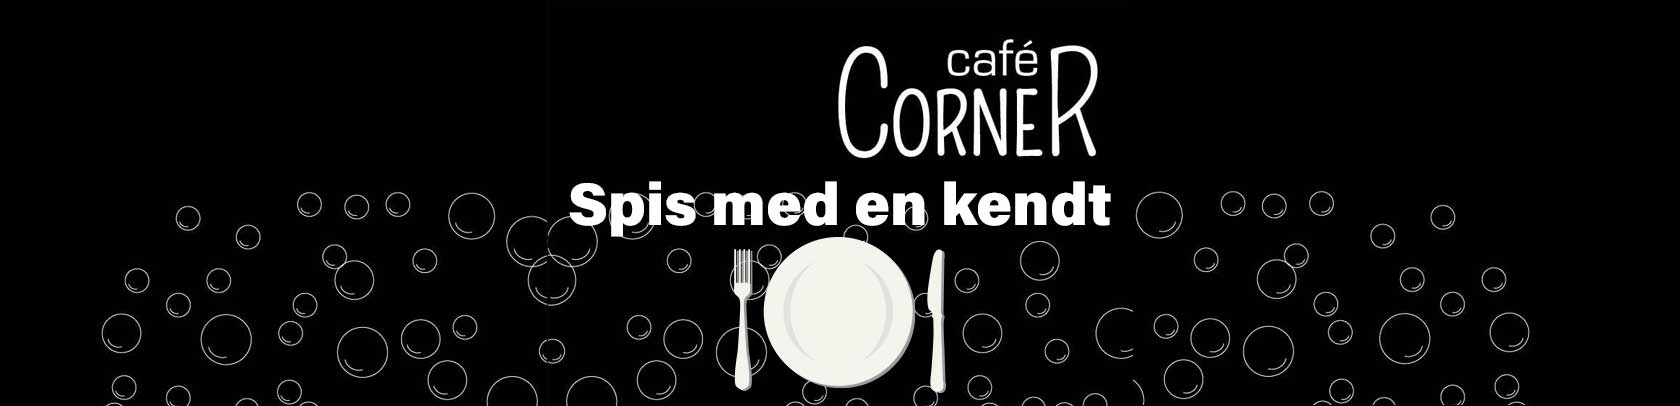 Spis med en kendt på Cafe Corner Dianalund